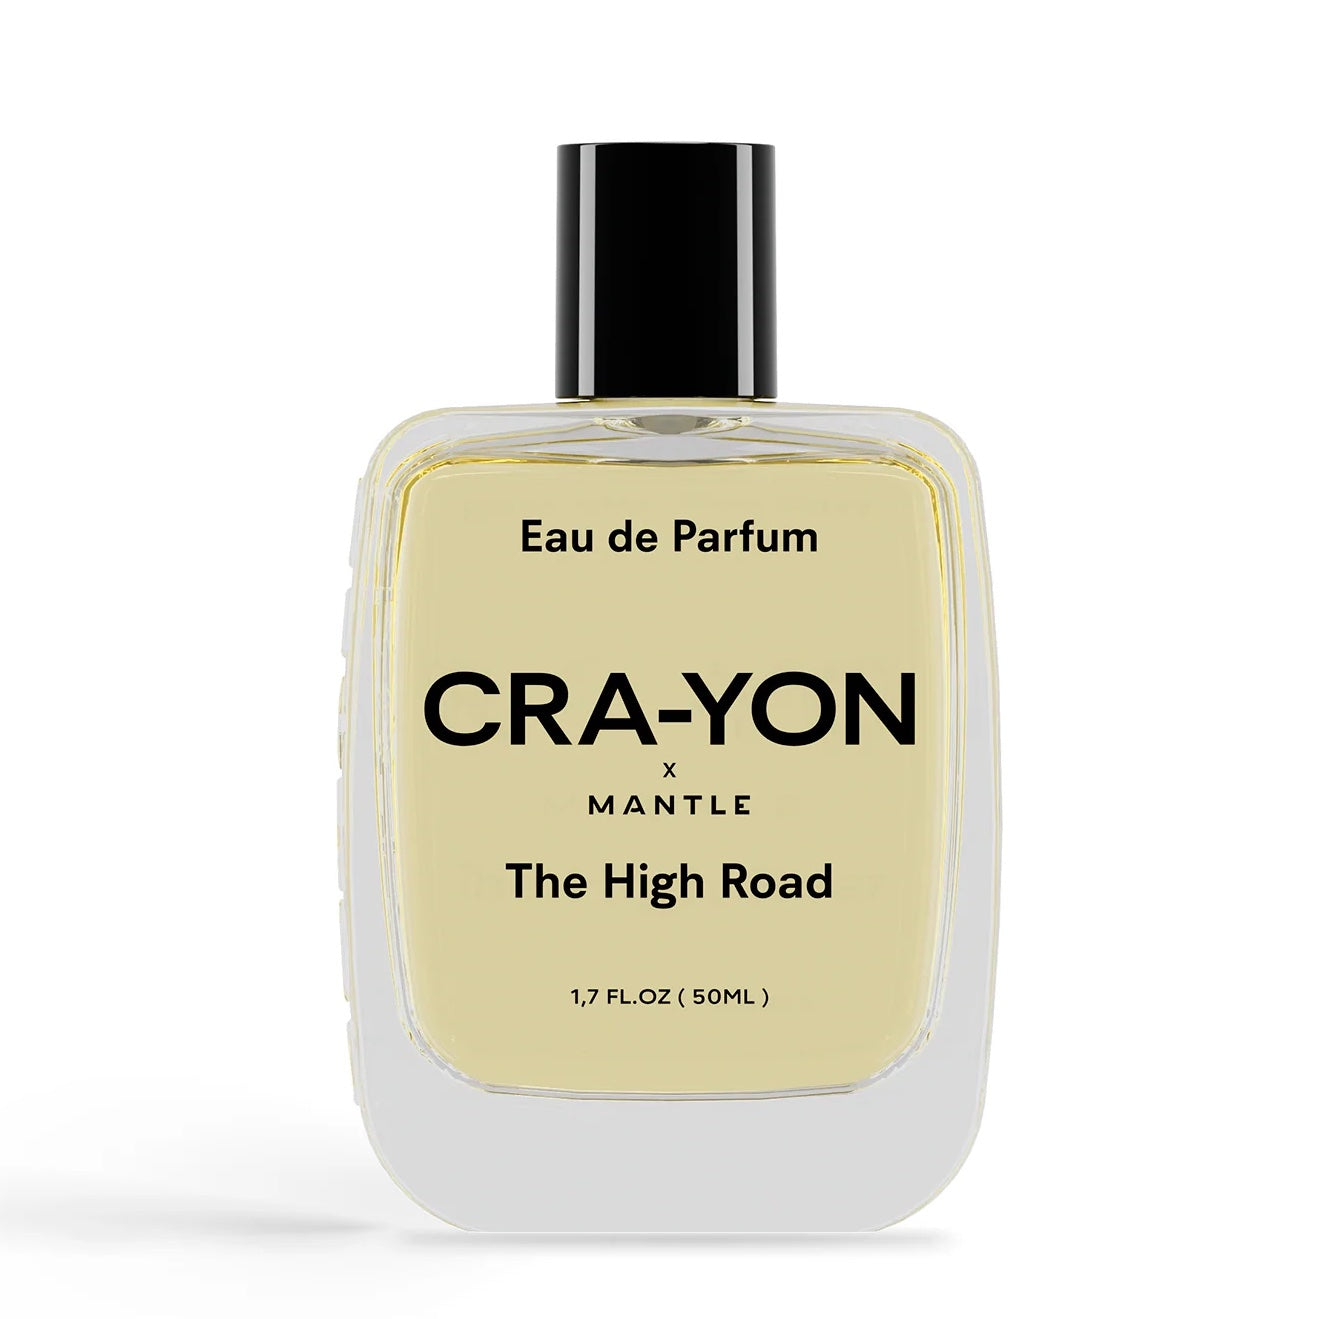 Cra-Yon The High Road Eau de Parfum